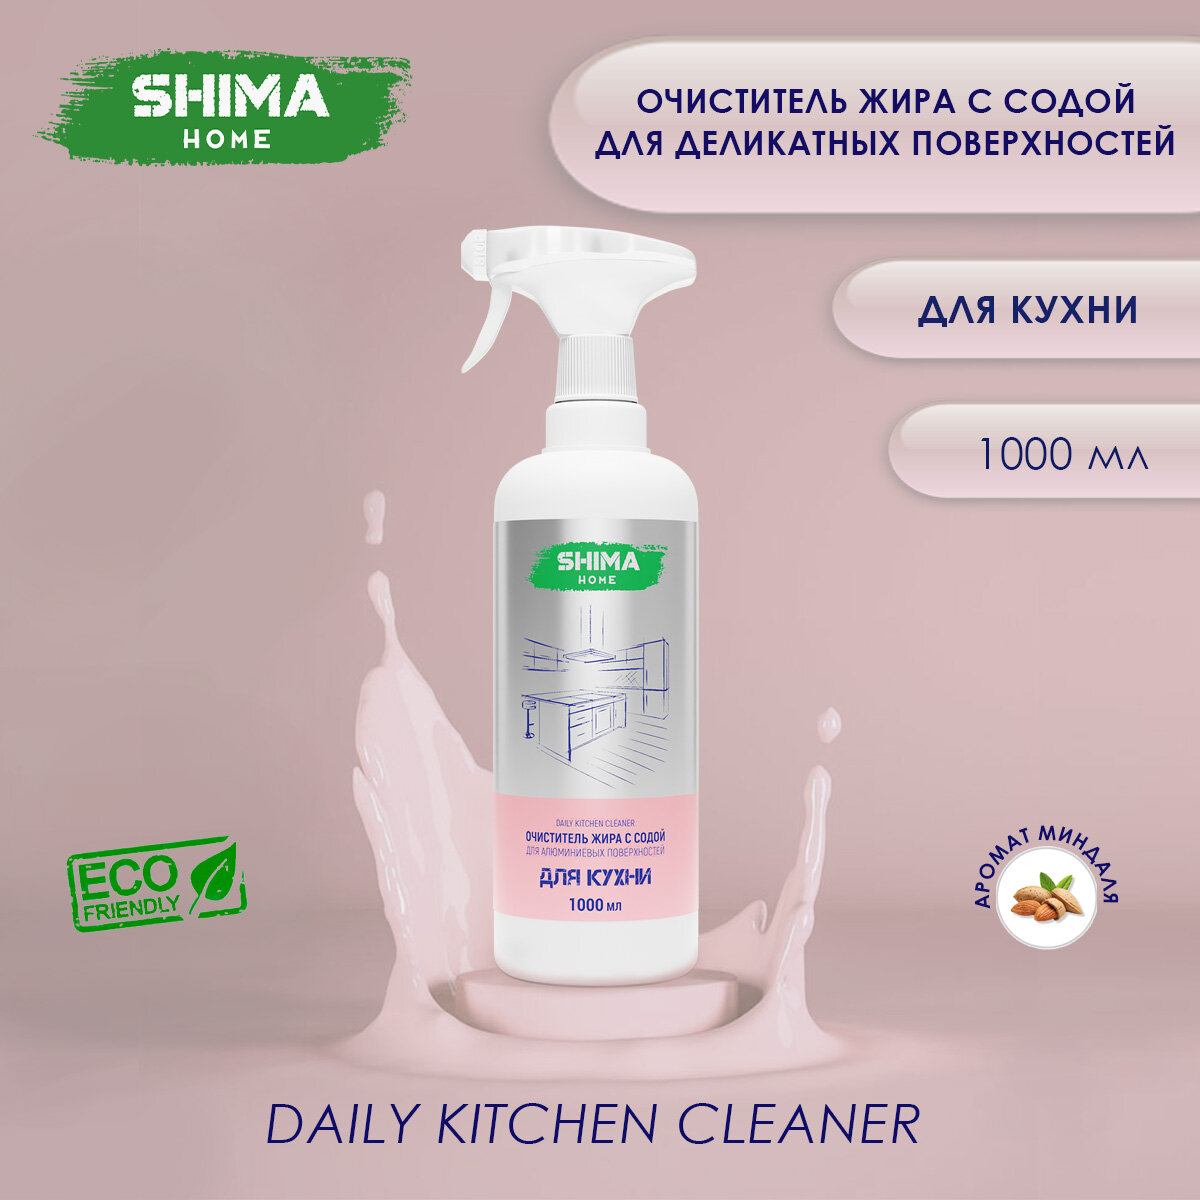 SHIMA HOME DAILY KITCHEN CLEANER Очиститель жира с содой для деликатных поверхностей 1000мл